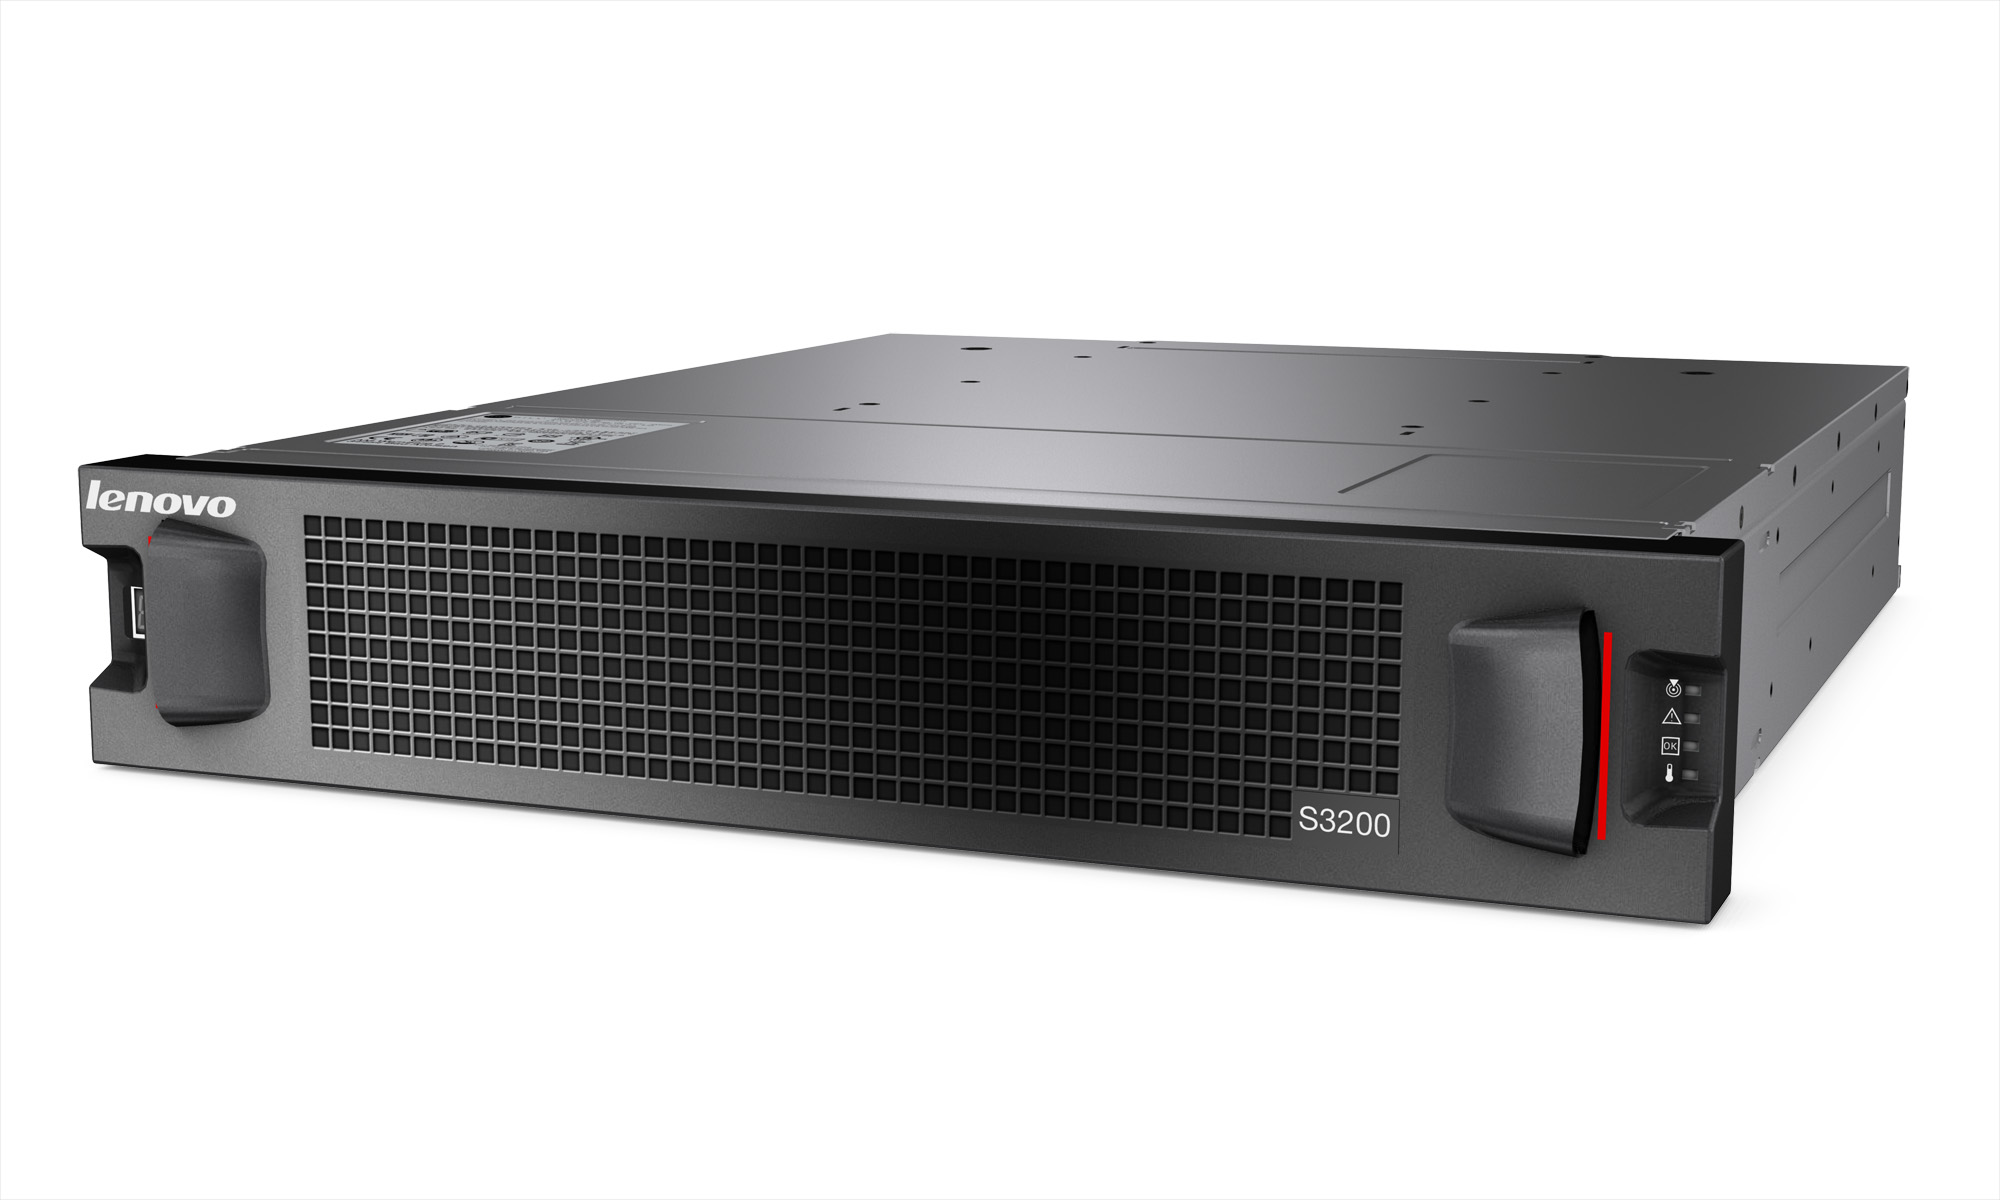 Lenovo представила SAN-массивы Storage S2200 и S3200